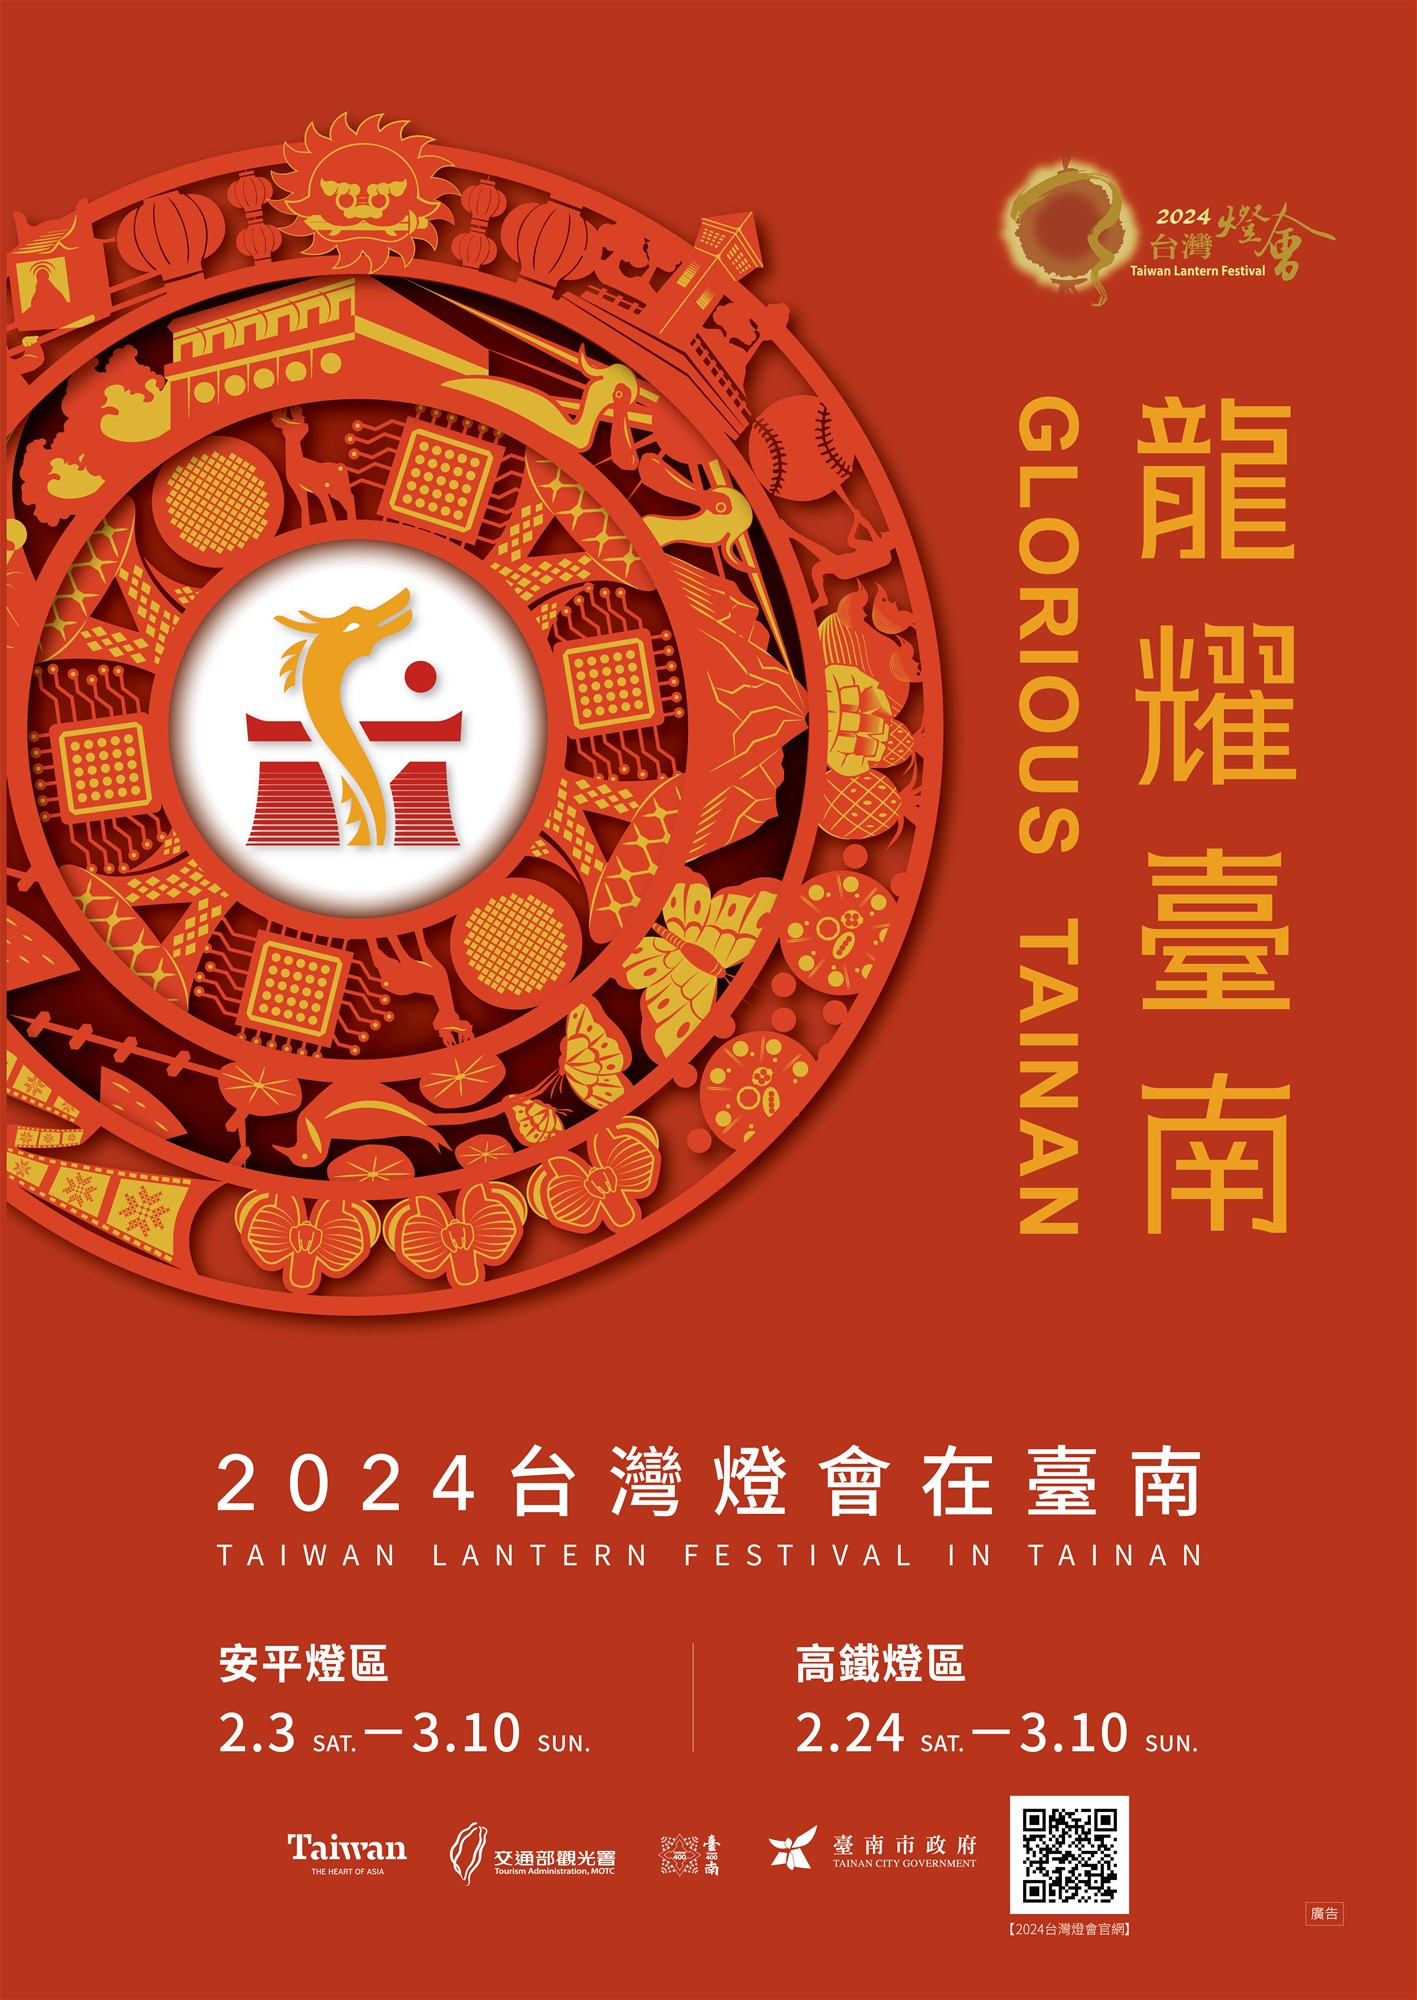 2024 Taiwan Lantern Festival in Tainan